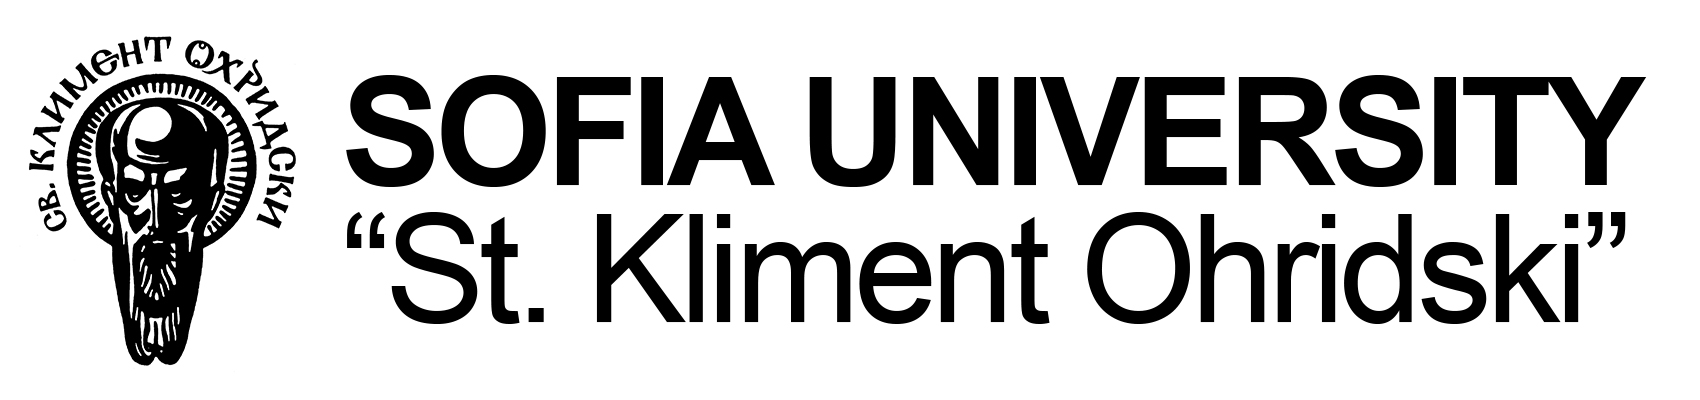 Софийский университет им. св. Климента Охридского логотип.png